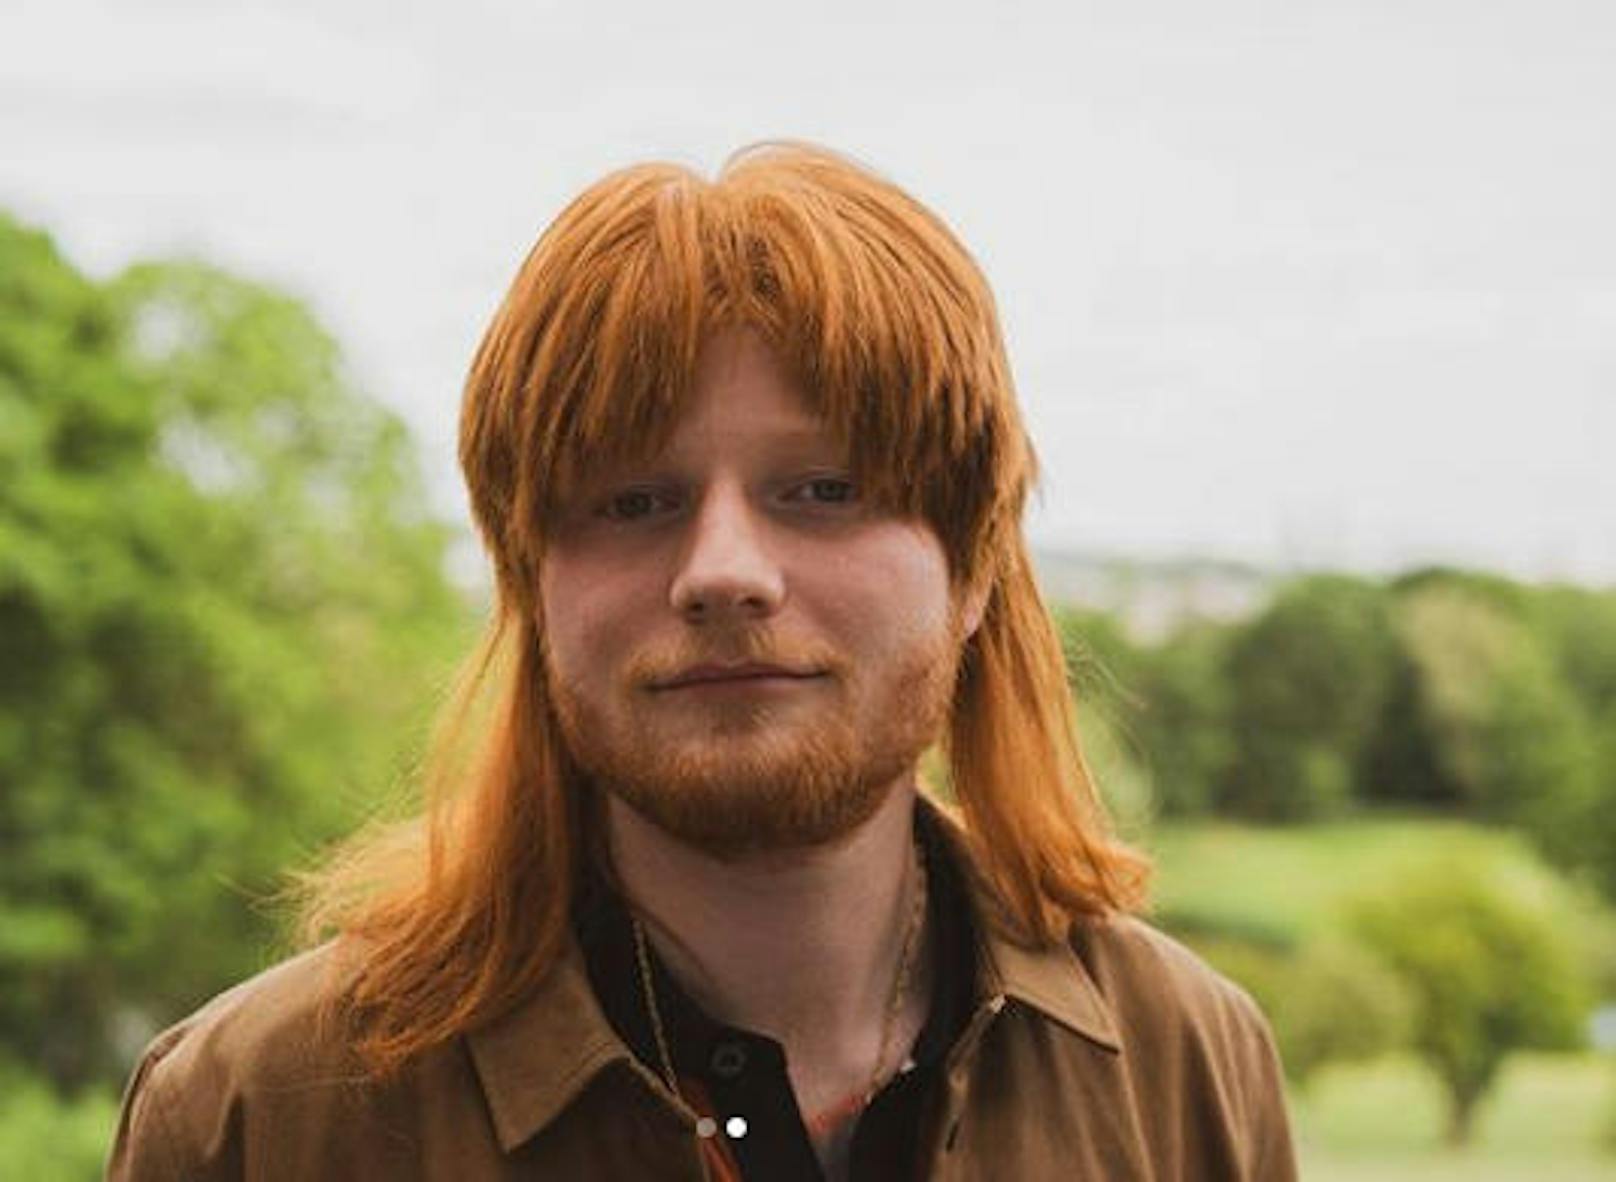 11.07.2019: Am 12. Juli erscheint "No.6 Colloborations", das vierte Studioalbum von Ed Sheeran (28). Auf Instagram wirbt der britische Sänger mit ungewöhnlichen Looks für die neue Platte. Nach Rauchebart und Make-up-Makse posiert er nun mit einem Vokuhila.